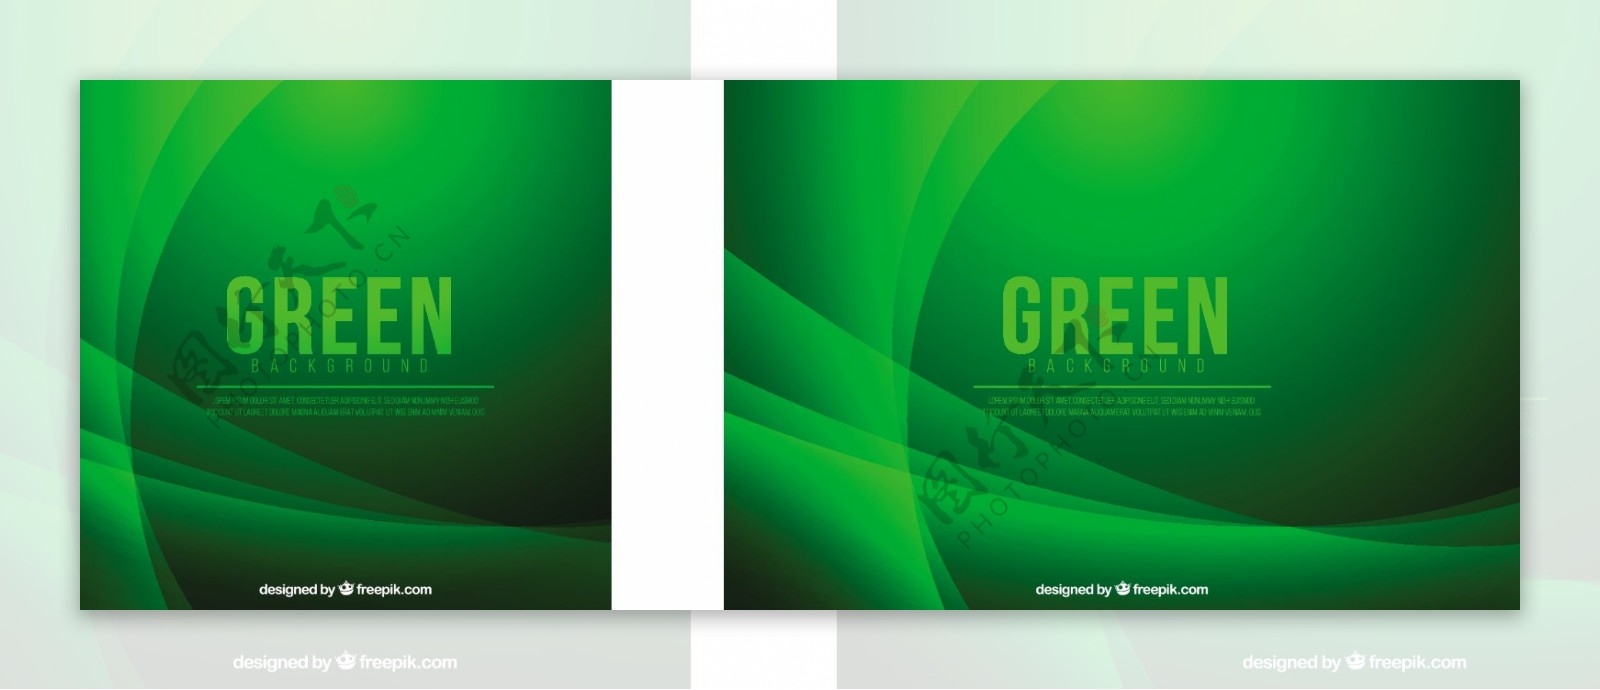 波浪形状的绿色抽象背景